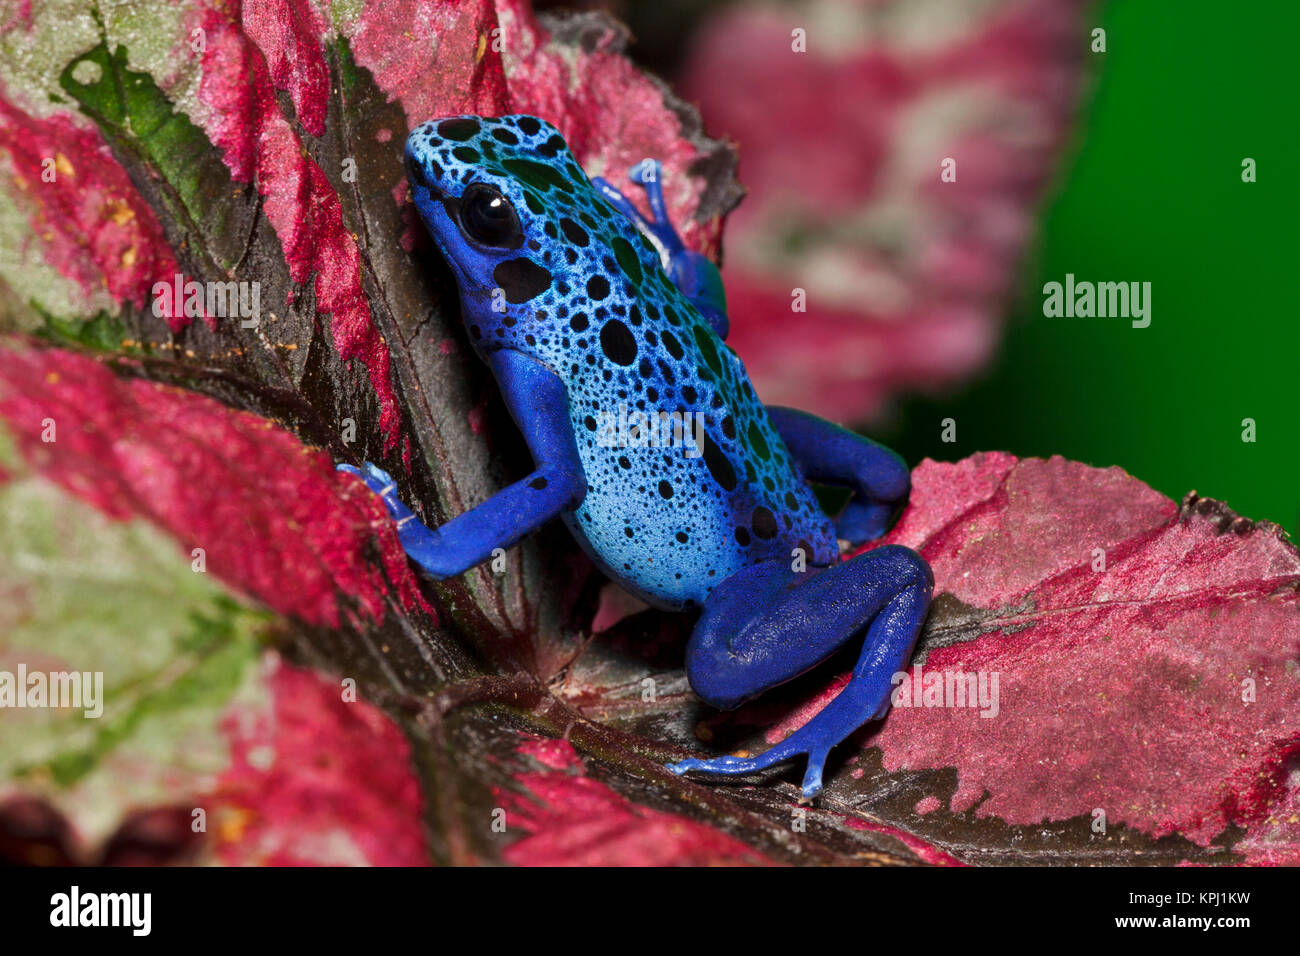 Blue Poison Dart Frog aka Okopipi (Dendrobates azureus), Surinam Stock Photo